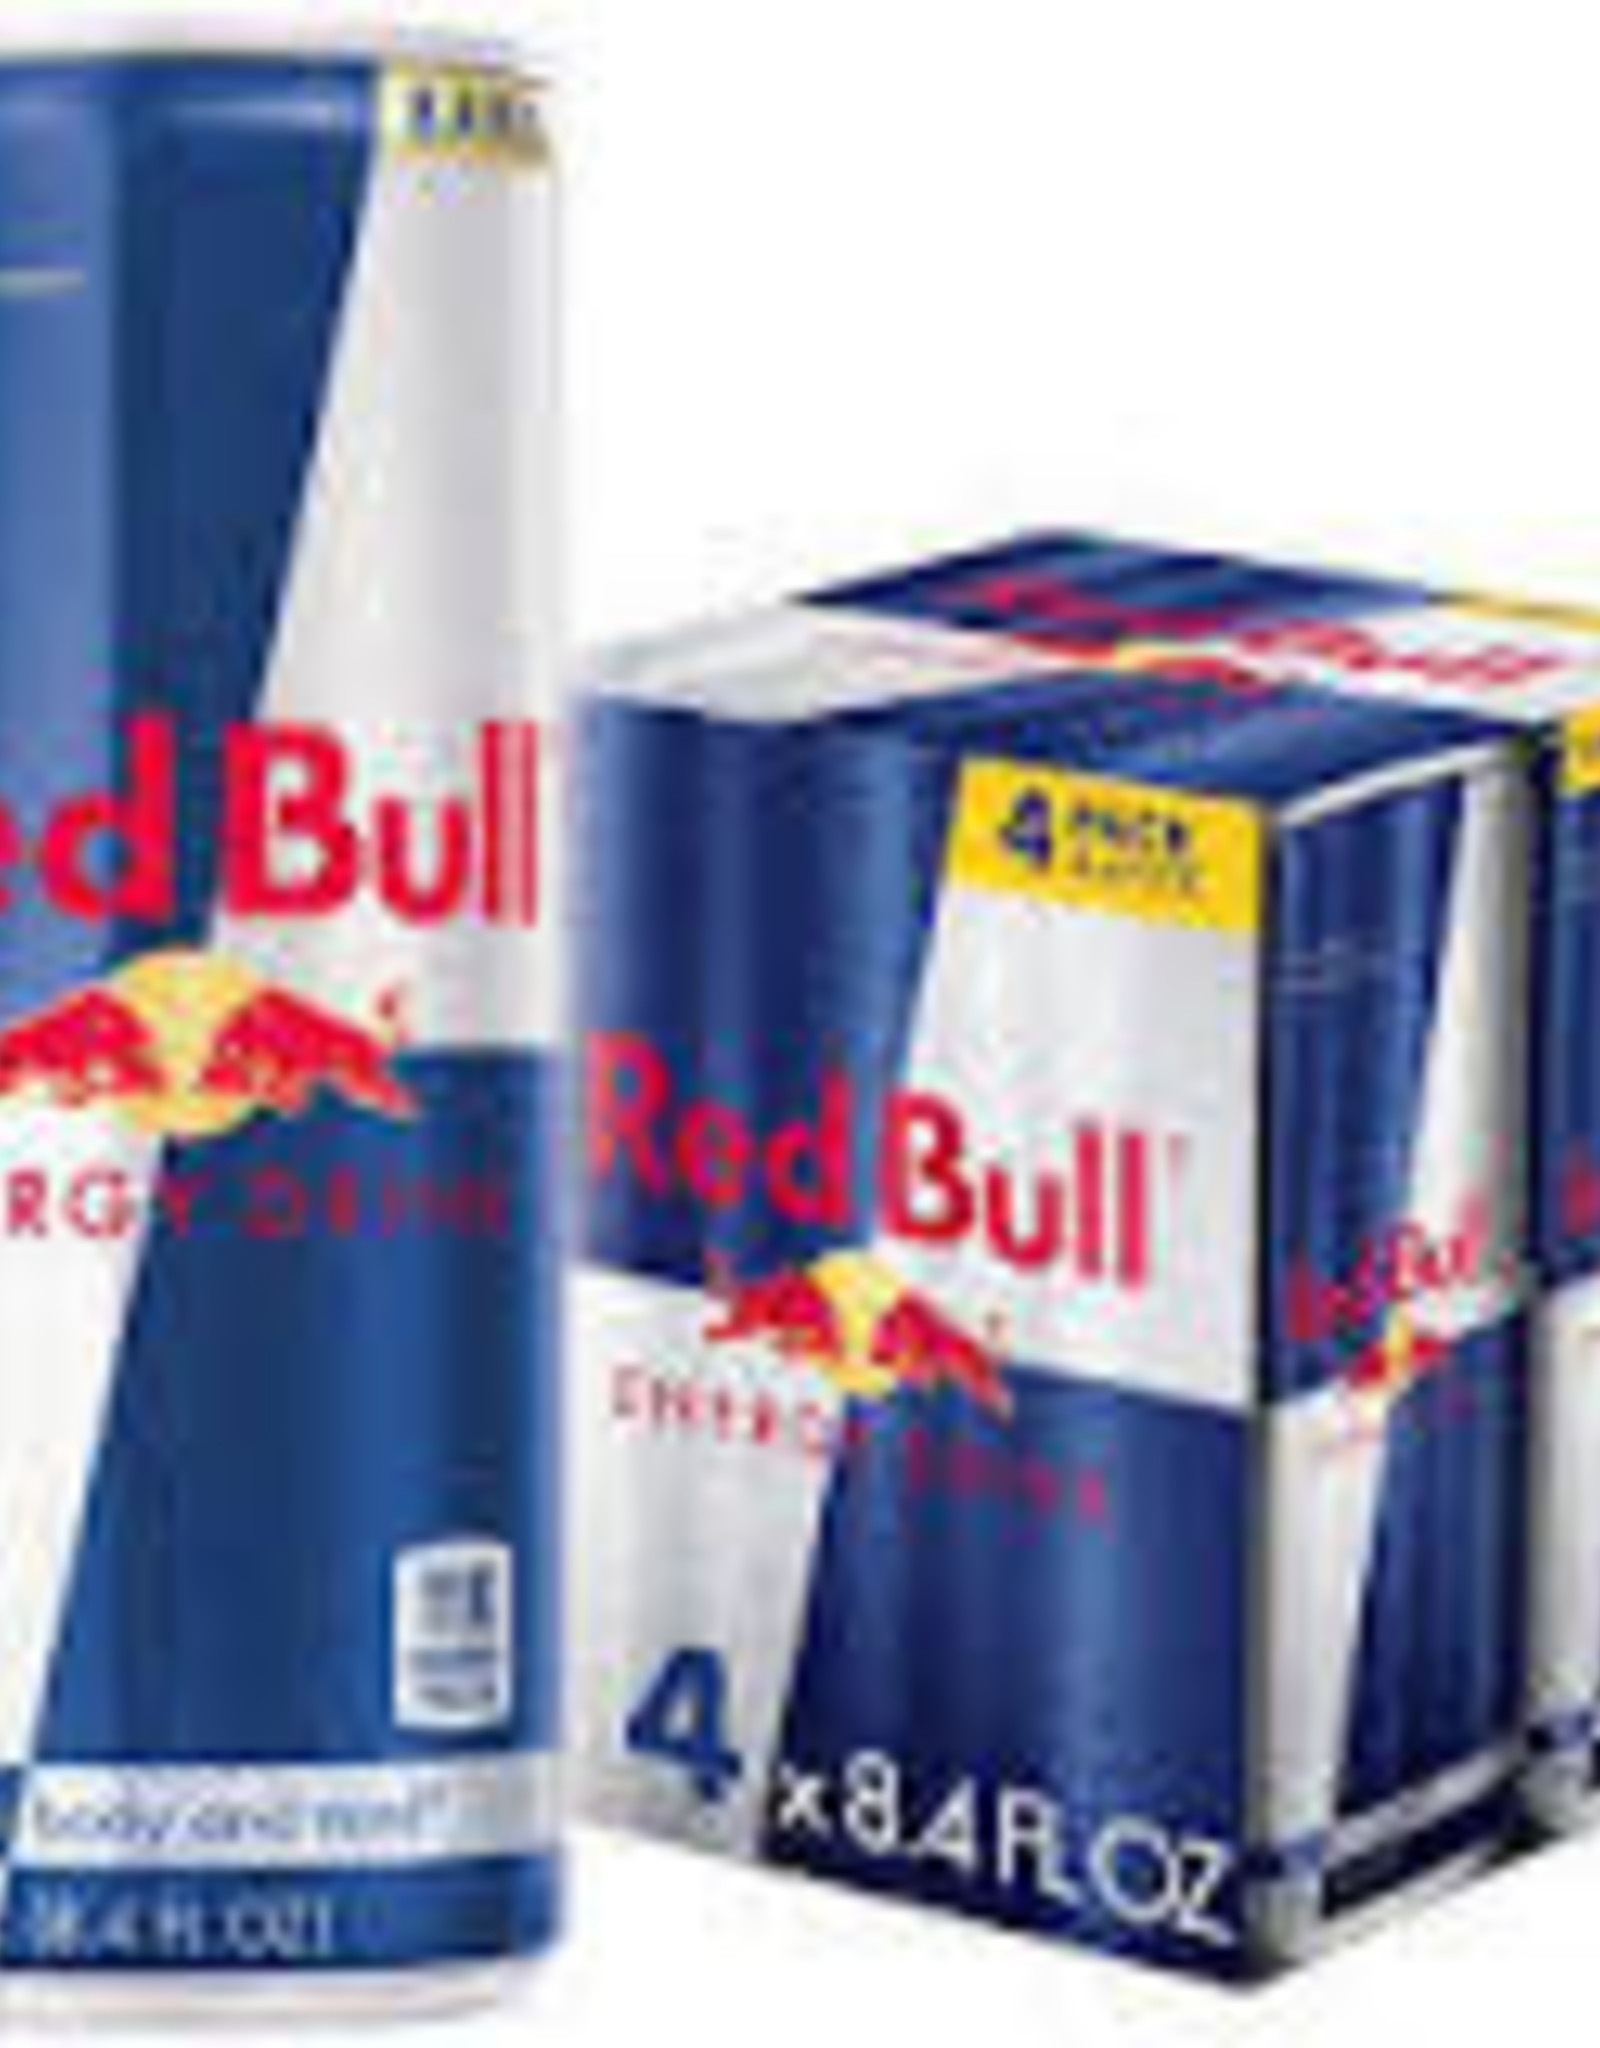 Red Bull Red Bull - Original - 4pk - 8.4oz - Cans